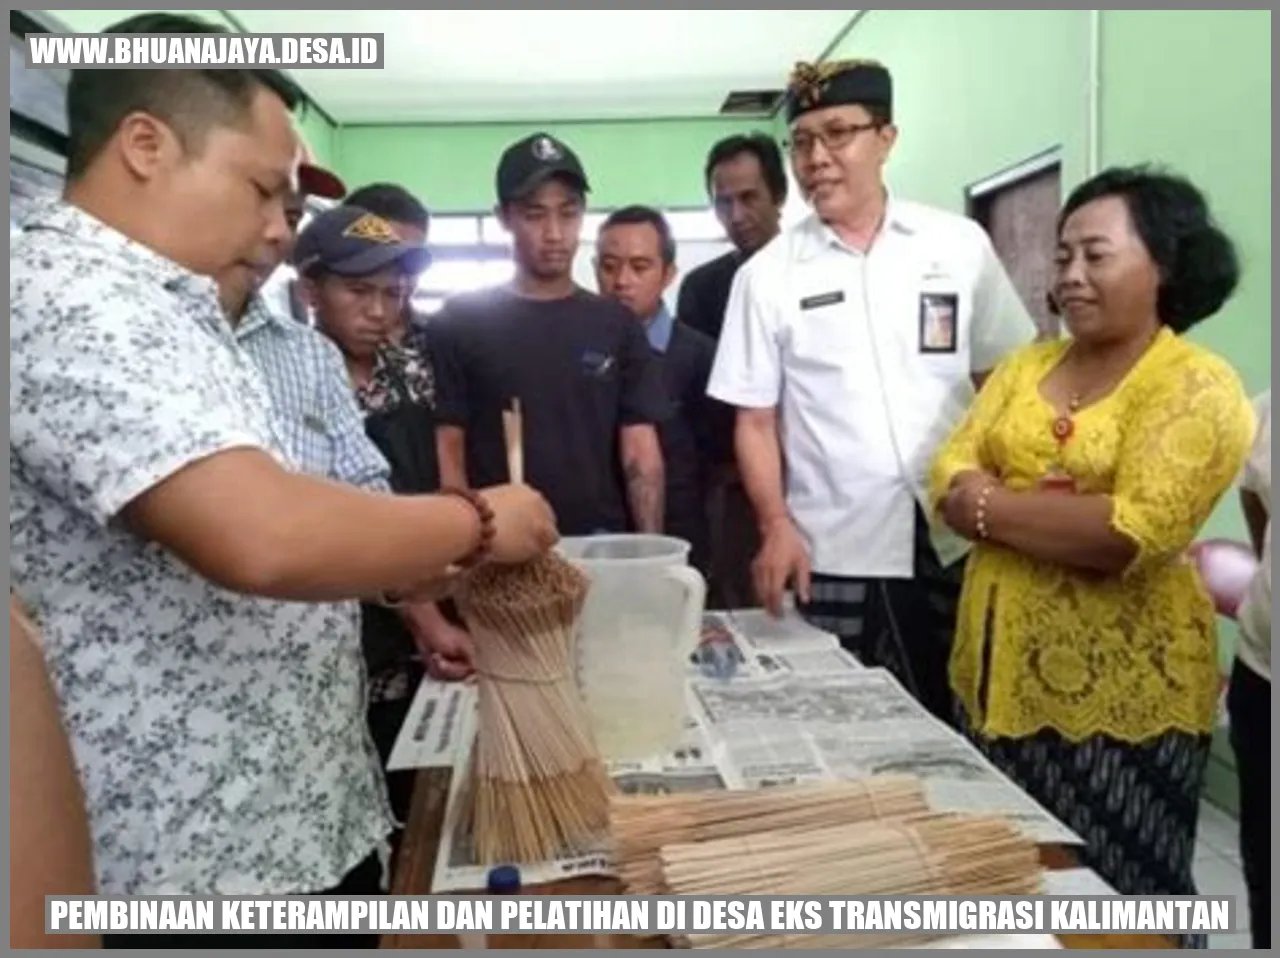 Pembinaan keterampilan dan pelatihan di desa eks transmigrasi Kalimantan